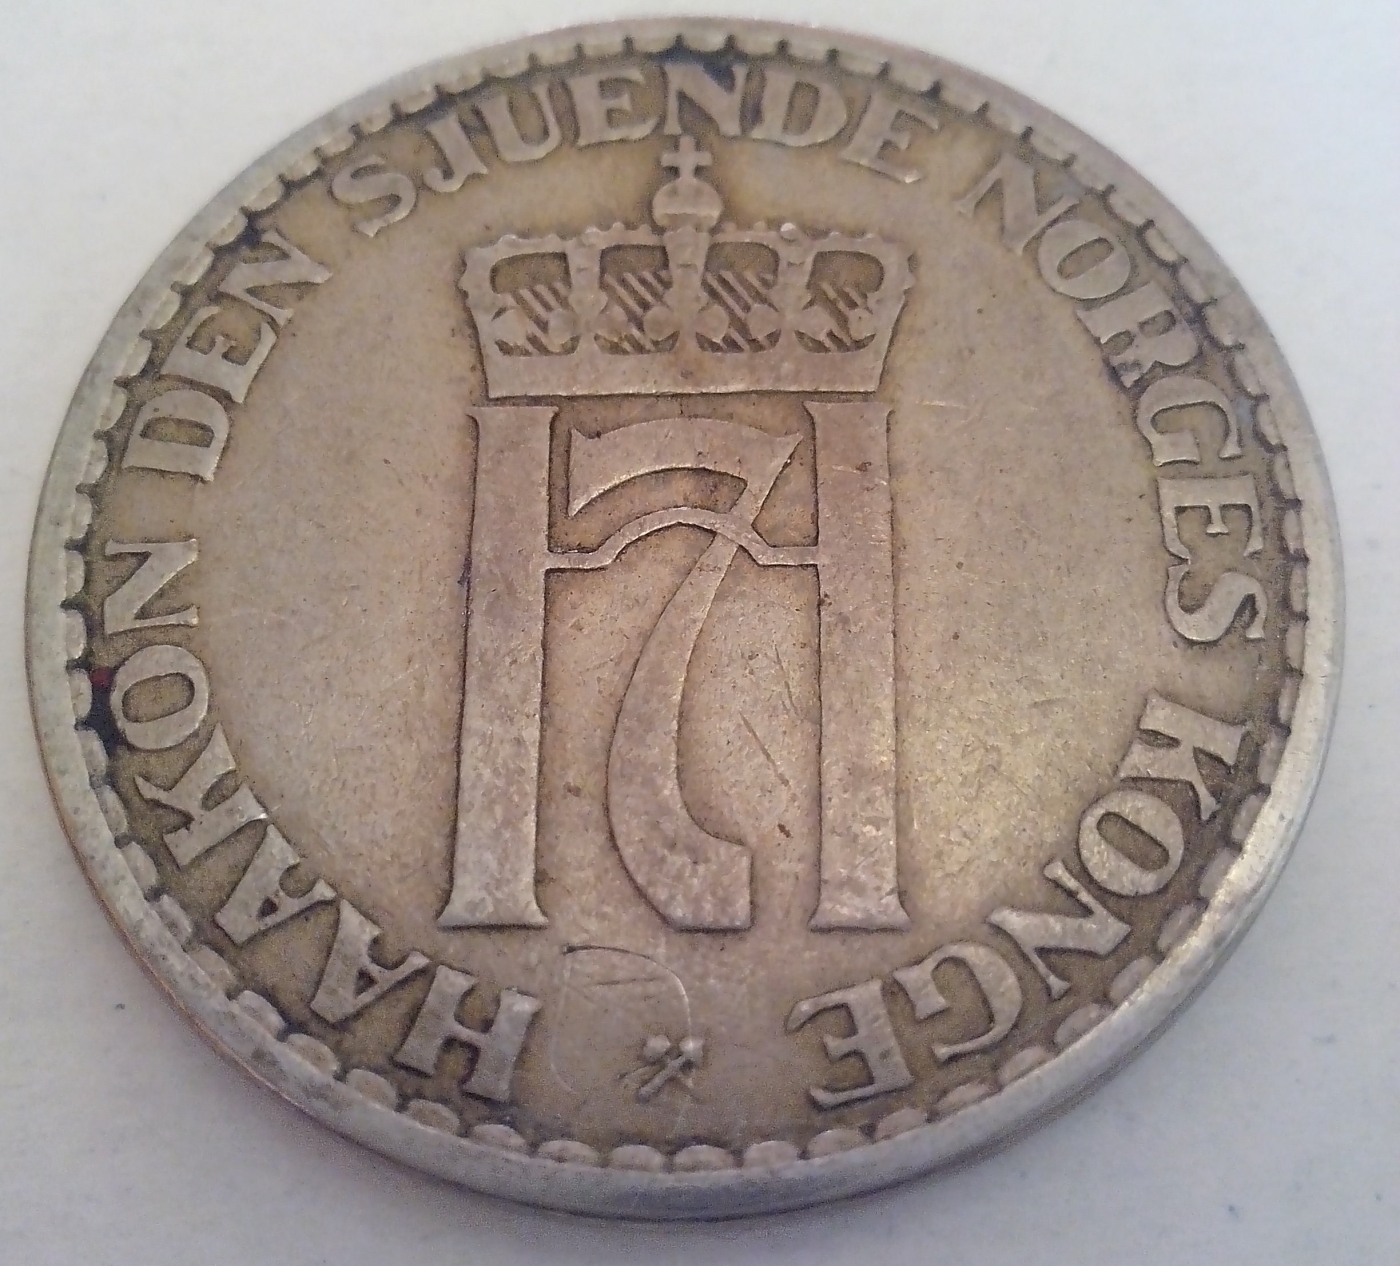 1 Krone 1953, Haakon VII (1930-1957) - Norway - Coin - 35563